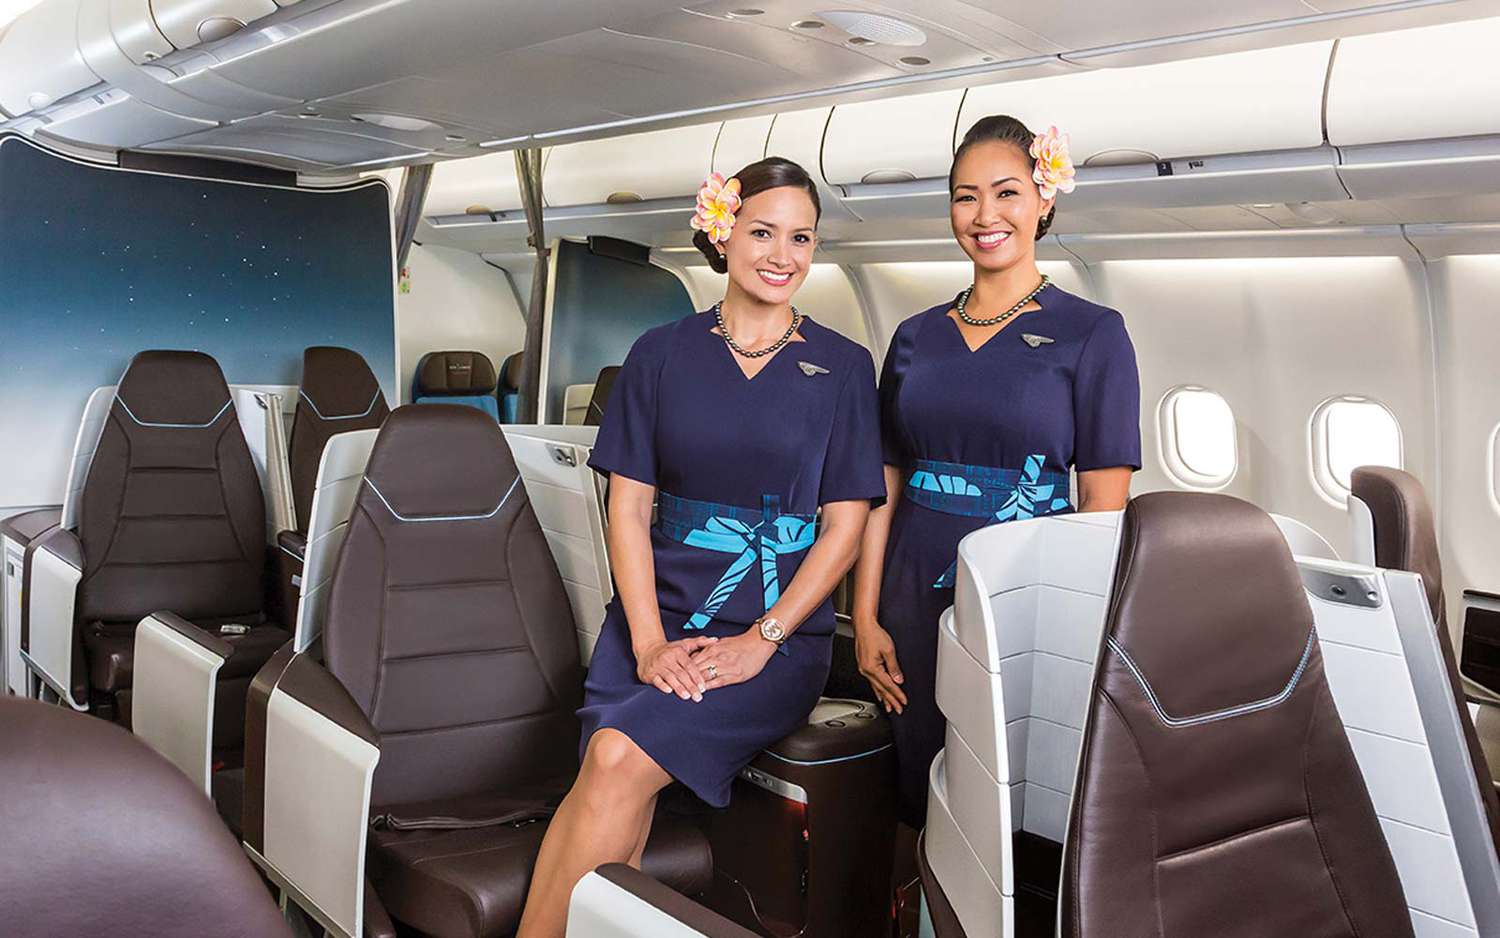 Hawaiian Airlines Female flight attendants Smile Inside Plane